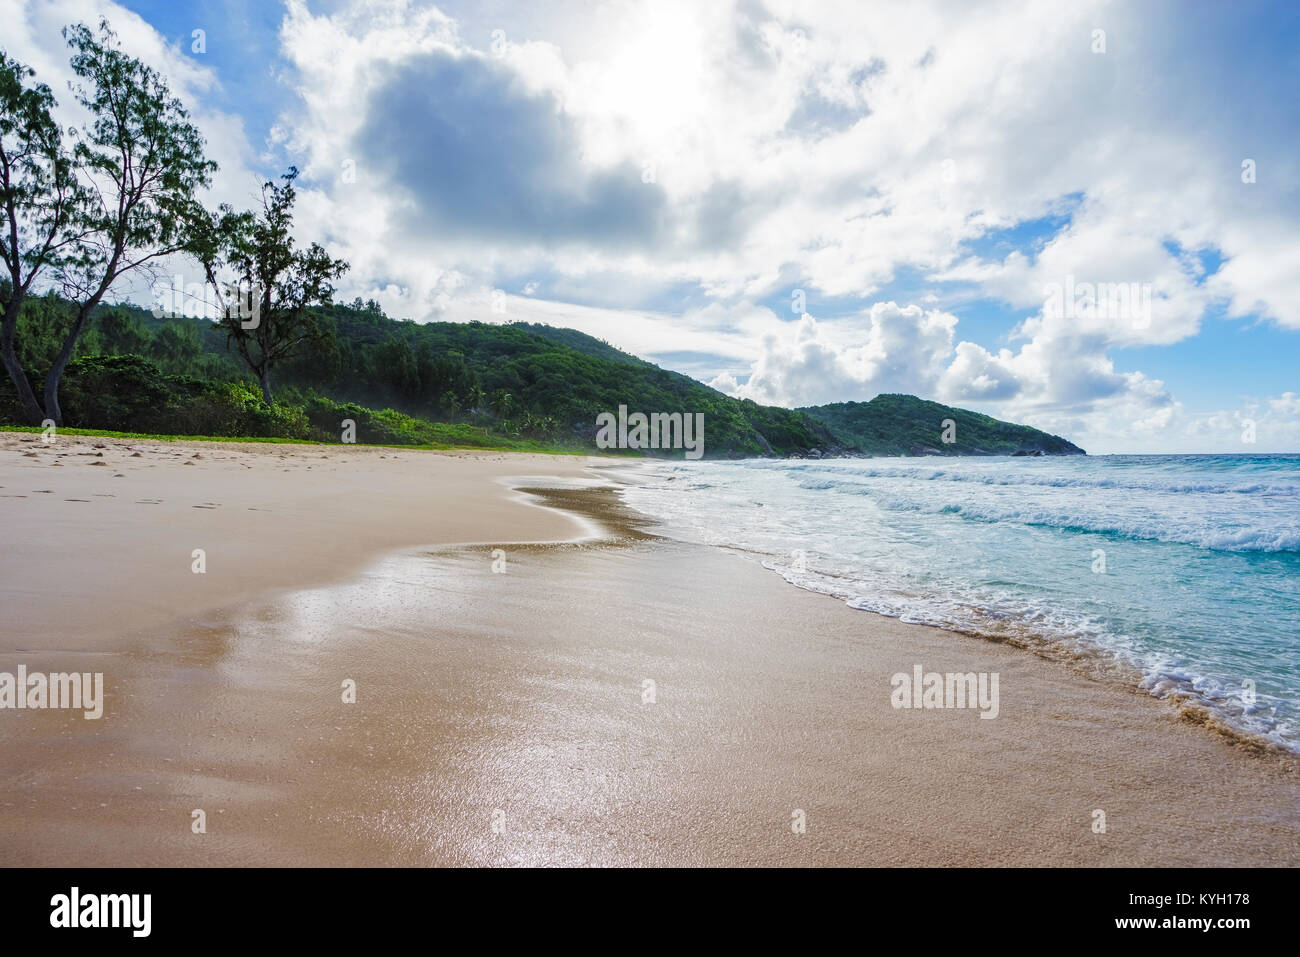 Wild Tropischer Strand mit Palmen in einem Dschungel, Sand und eine rauhe See an der Polizei Bay auf den Seychellen an einem bewölkten Tag Stockfoto